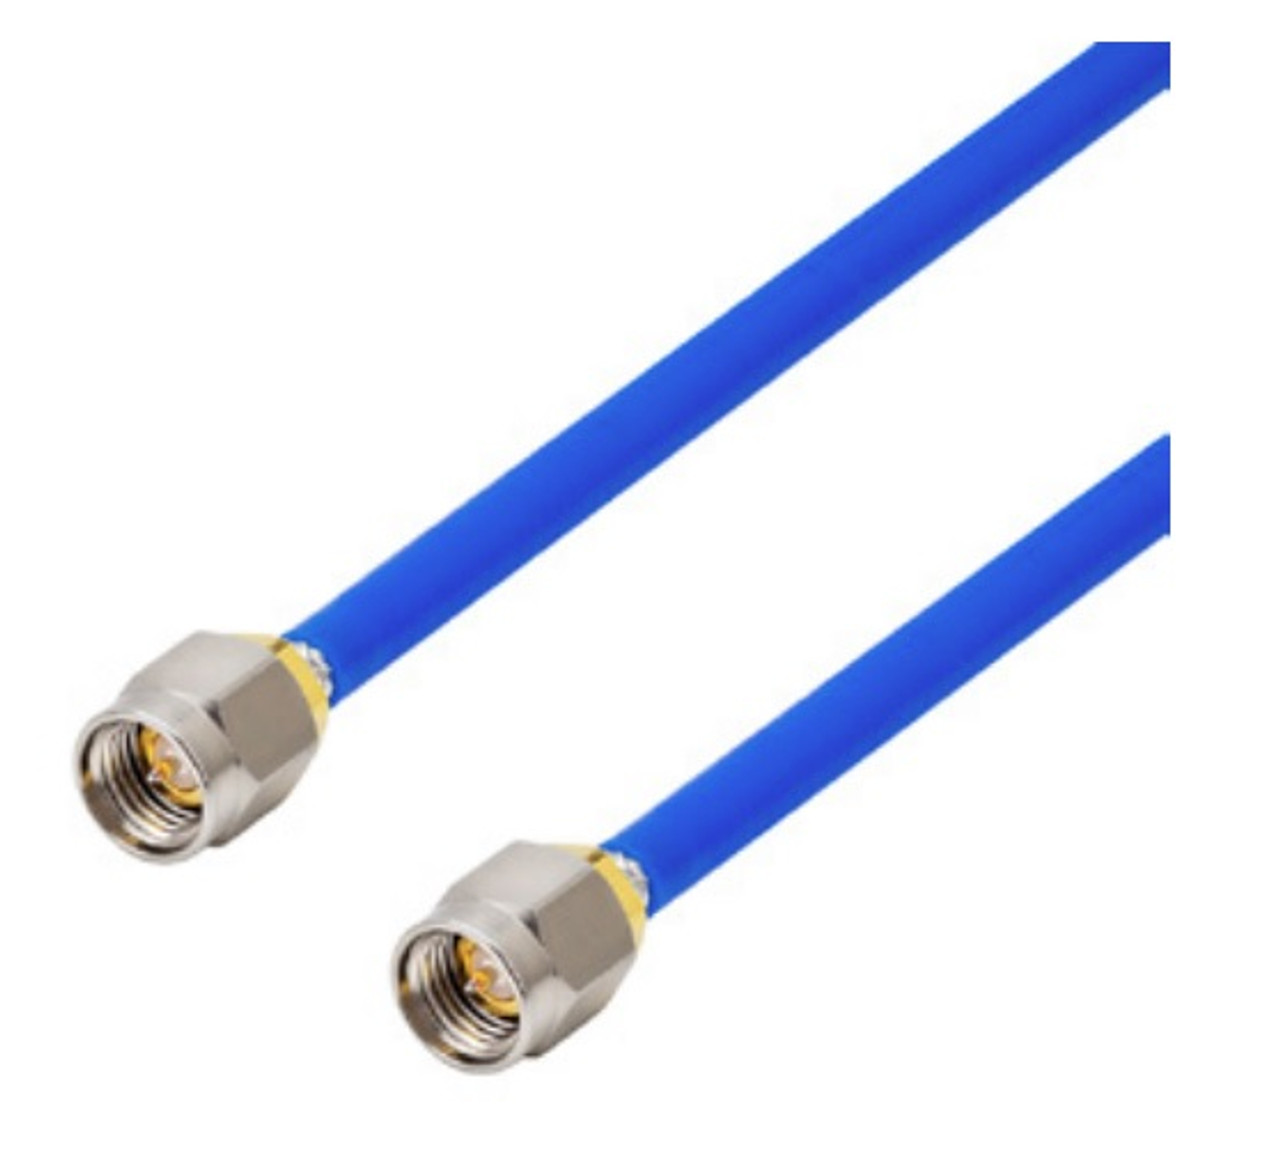 6-Inch - 141 Semiflex interconnect Coaxial Cable - SMA-Male to SMA-Male